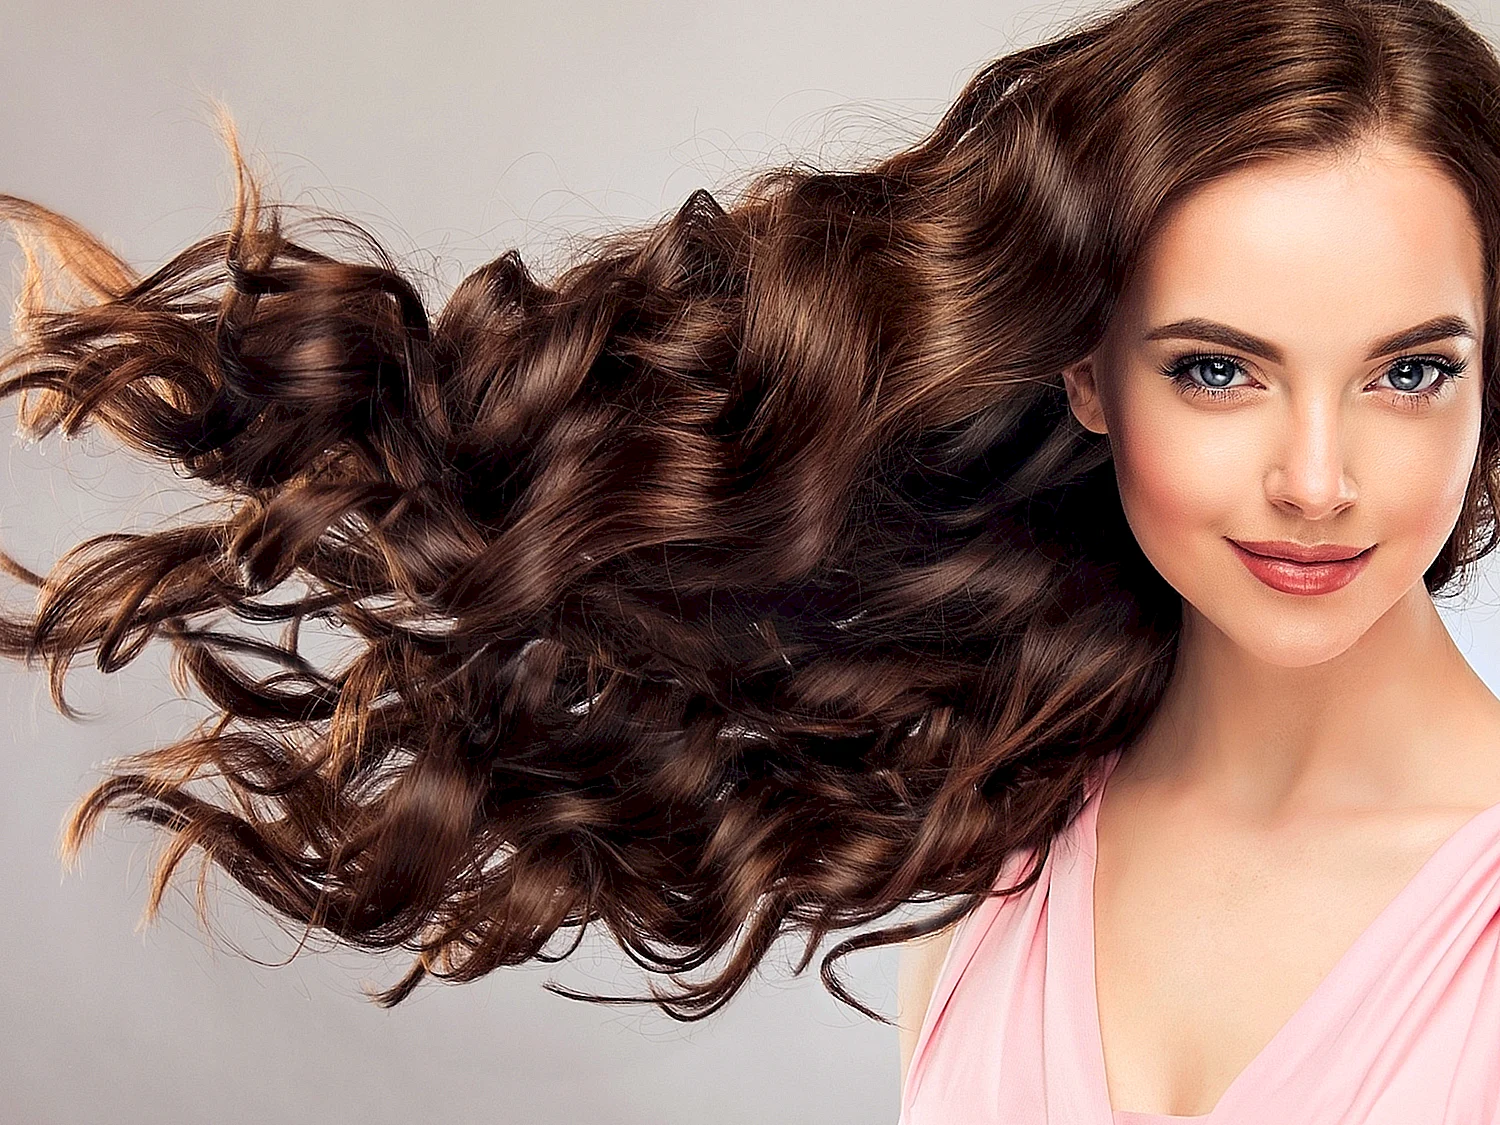 Красивые и здоровые волосы — мечта каждой девушки. — Український телекомунікаційний портал